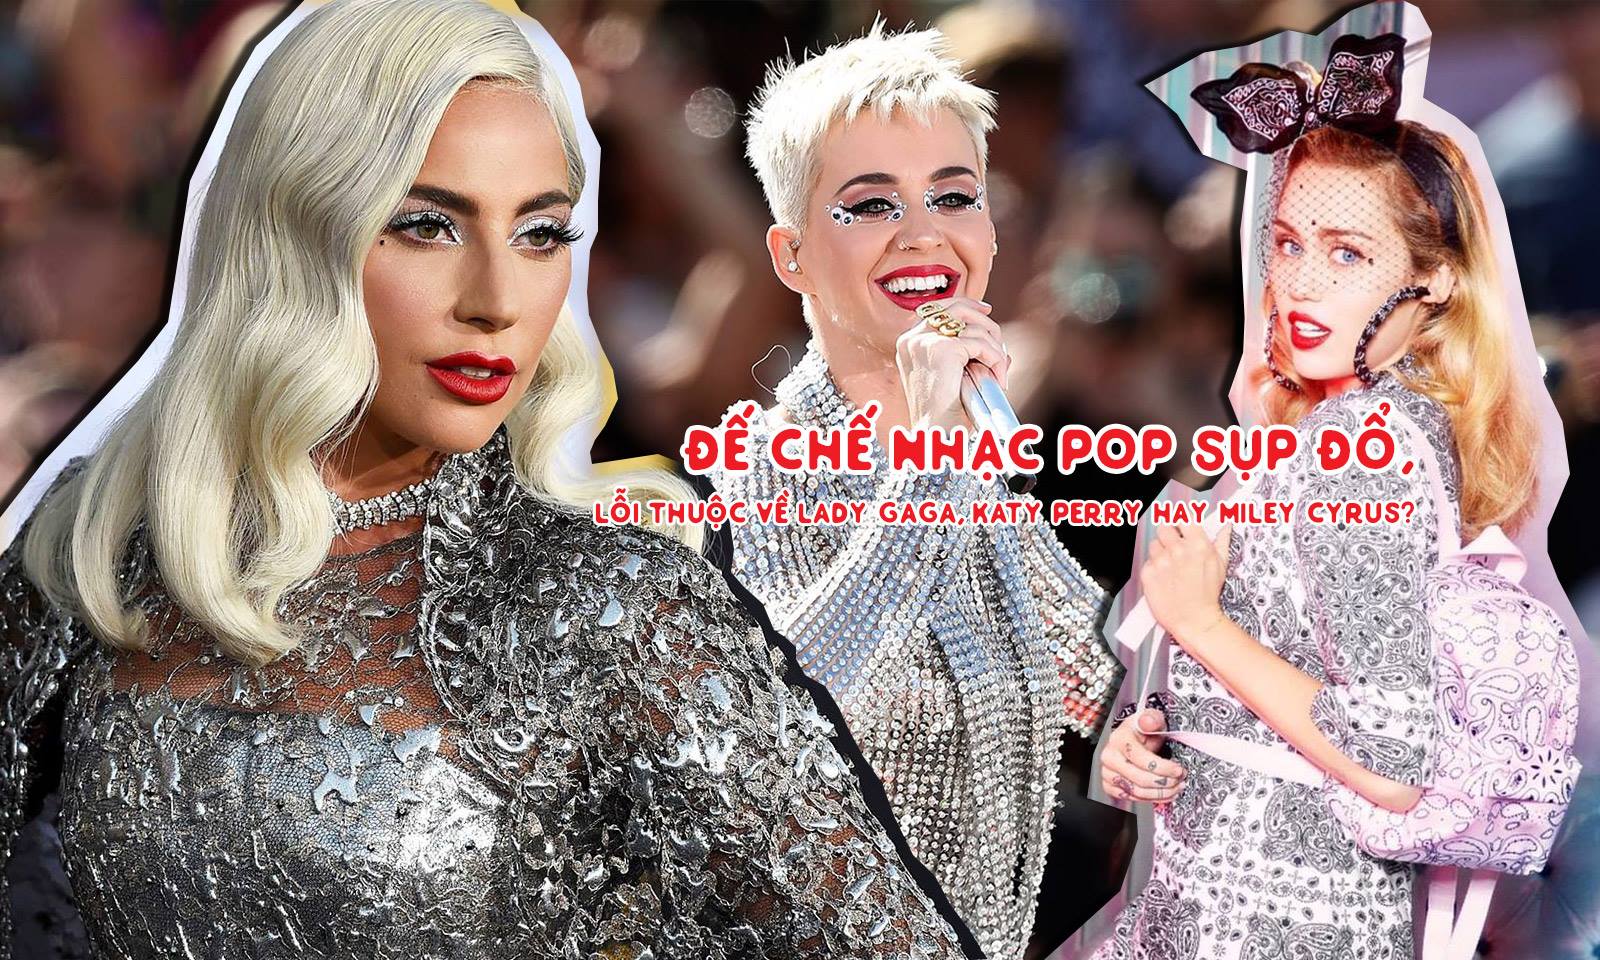 Đế chế nhạc pop sụp đổ, lỗi thuộc về Katy Perry, Miley Cyrus hay Lady Gaga?